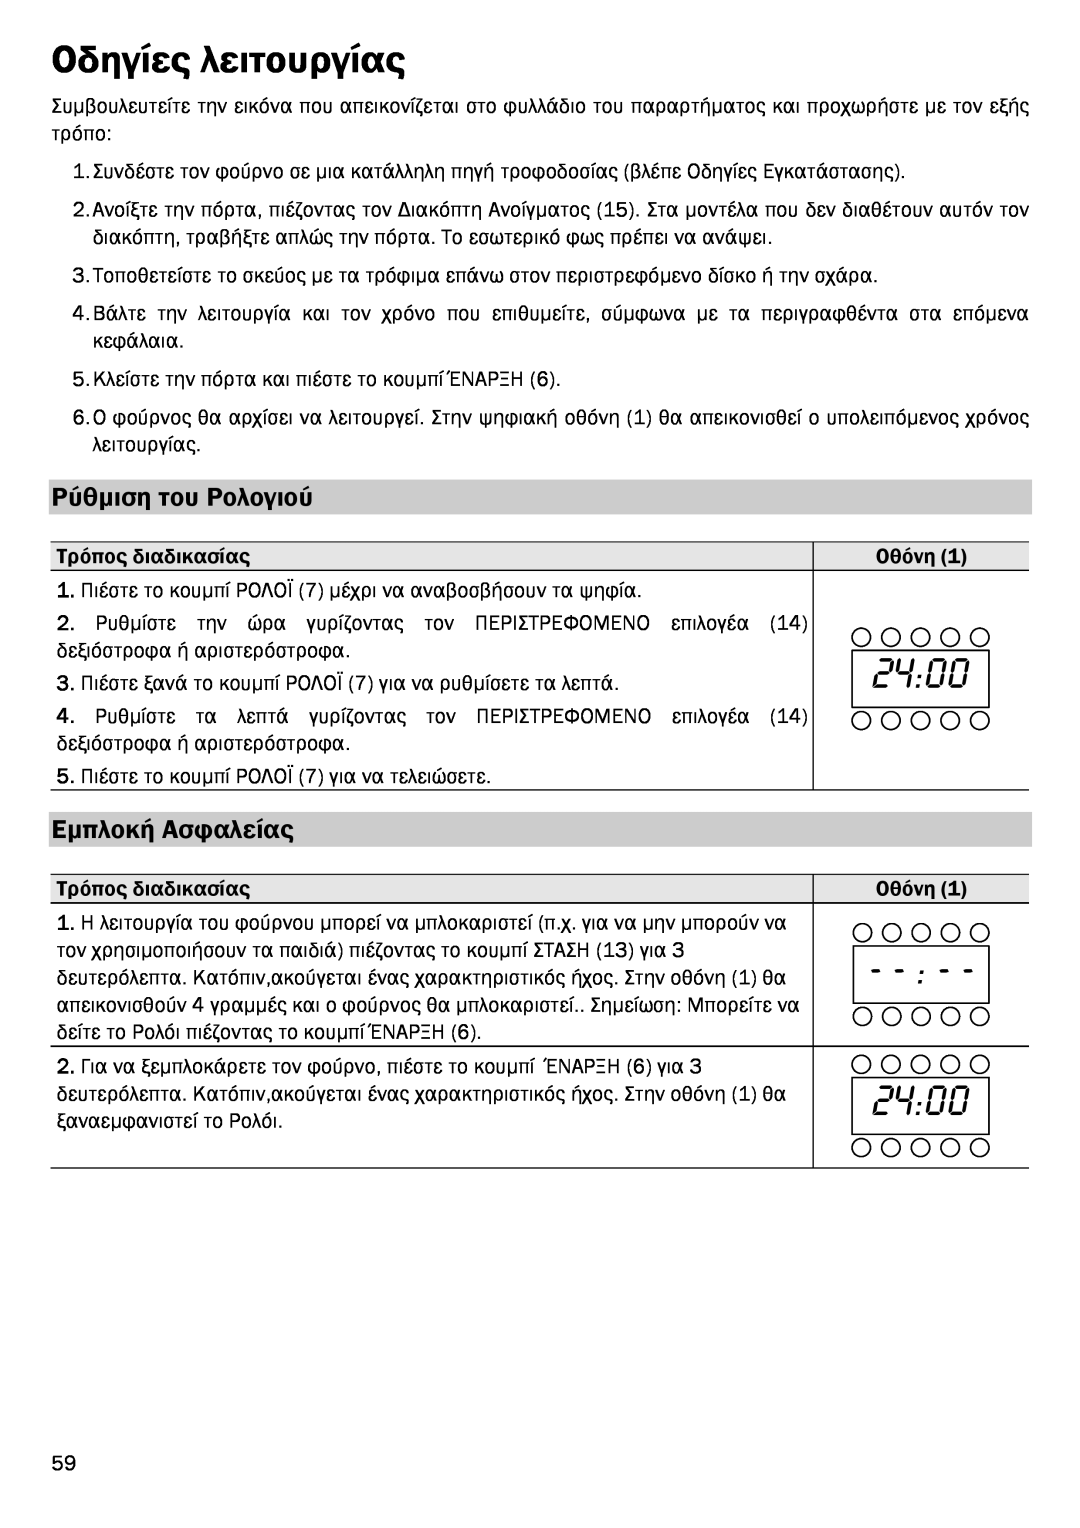 Smeg FME20EX1 manual Οδηγίες λειτουργίας, Ρύθµιση του Ρολογιού, Εµπλοκή Ασφαλείας, 2400 